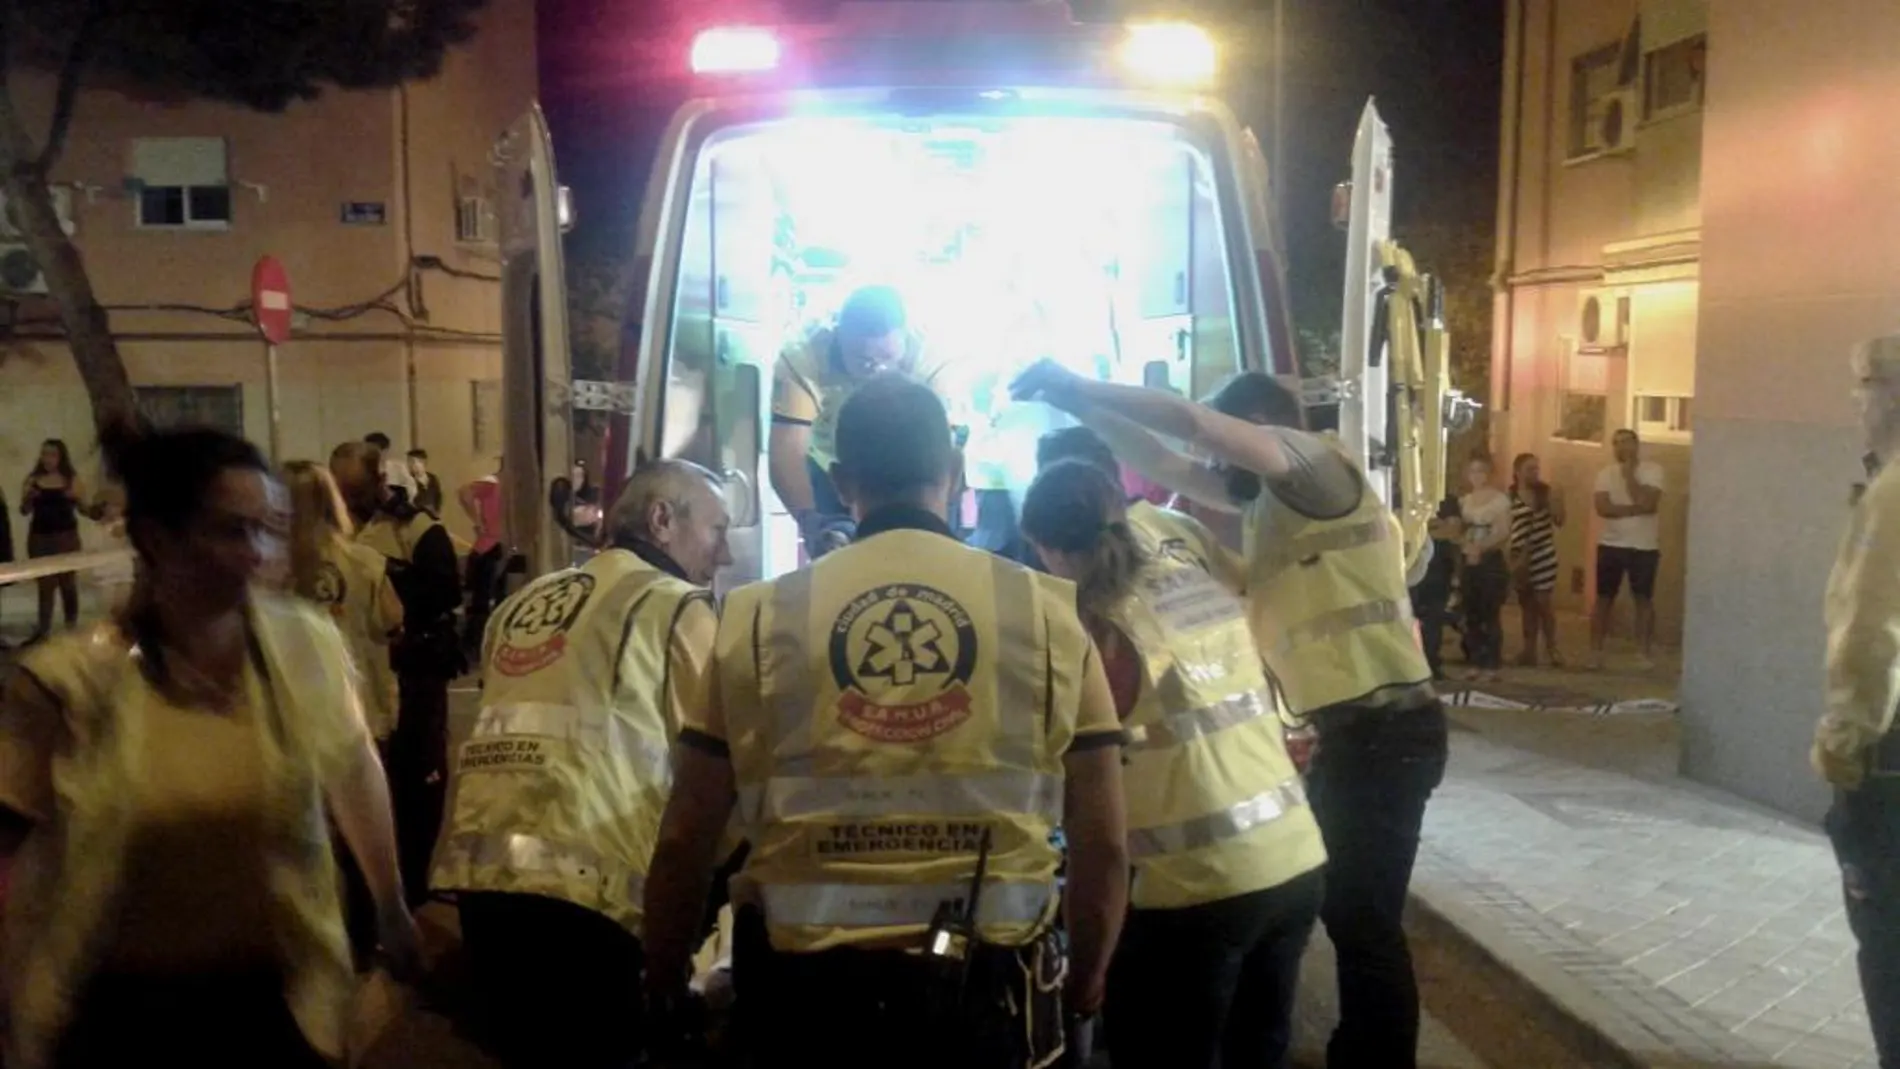 Fotografía facilitada por el Ayuntamiento de Madrid de los efectivos del Samur atendiendo al joven